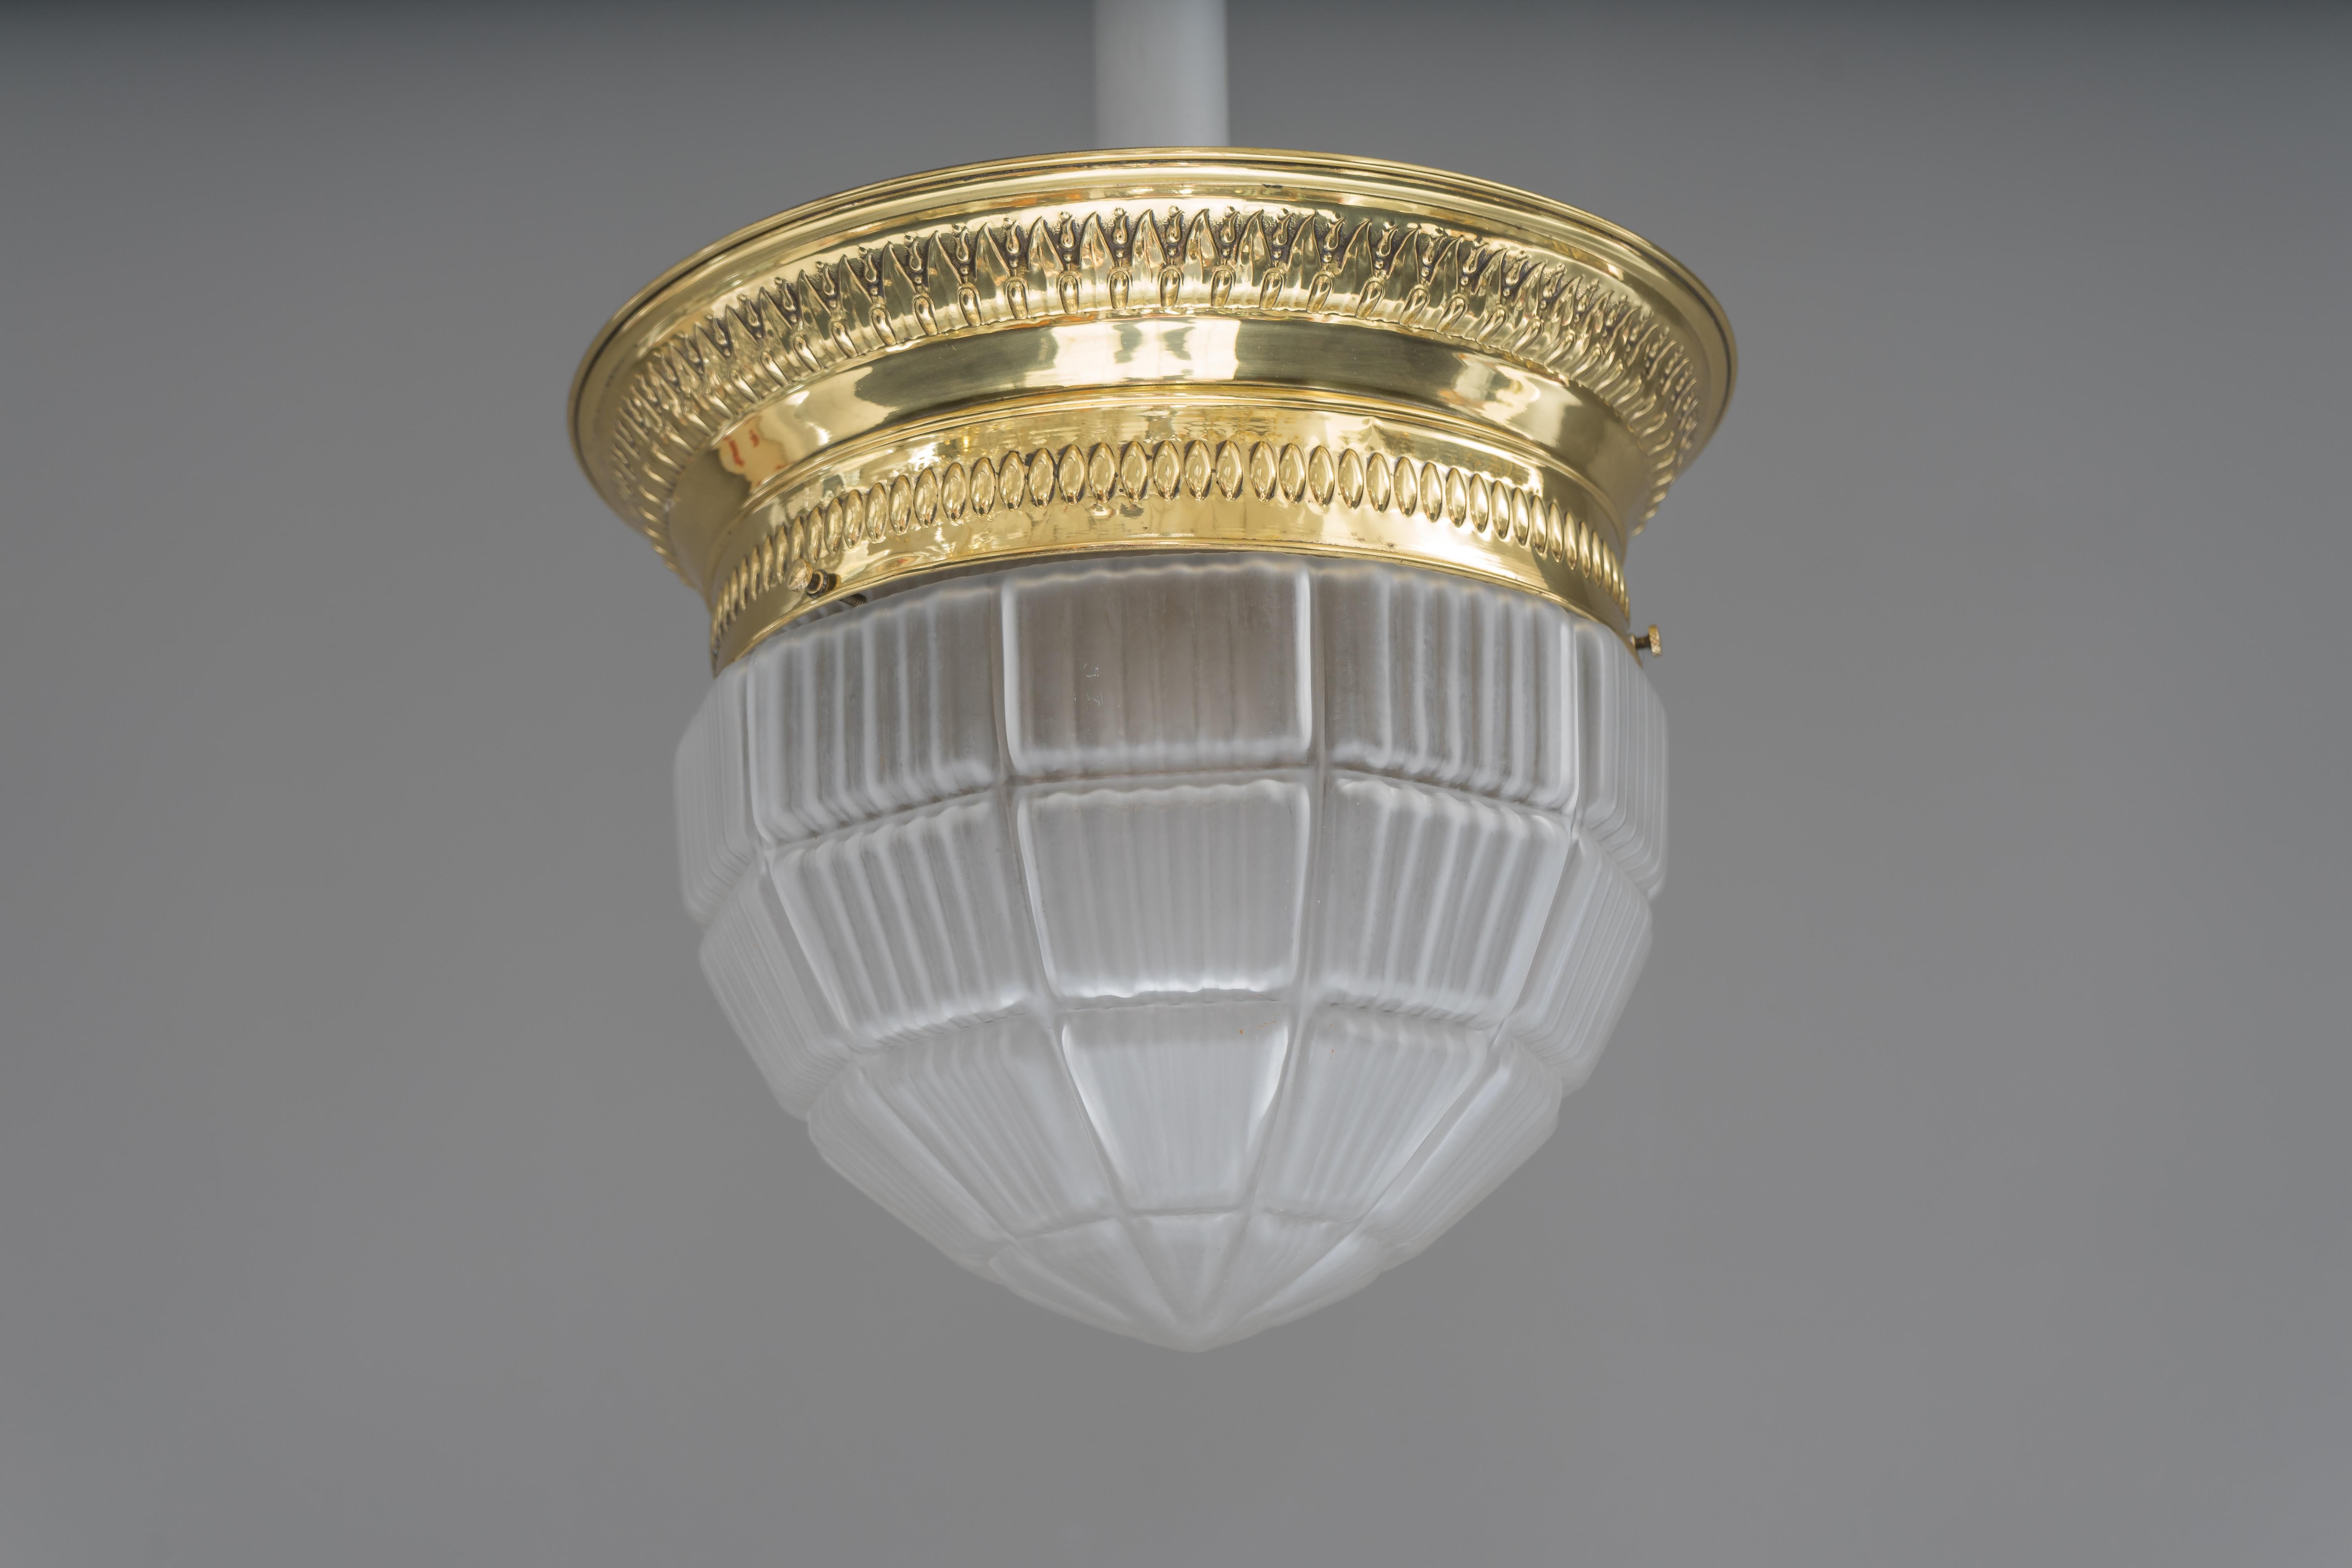 Lampe de plafond Art Déco Vienne circa 1920s avec verre original
Polis et émaillés au four
Verre original.